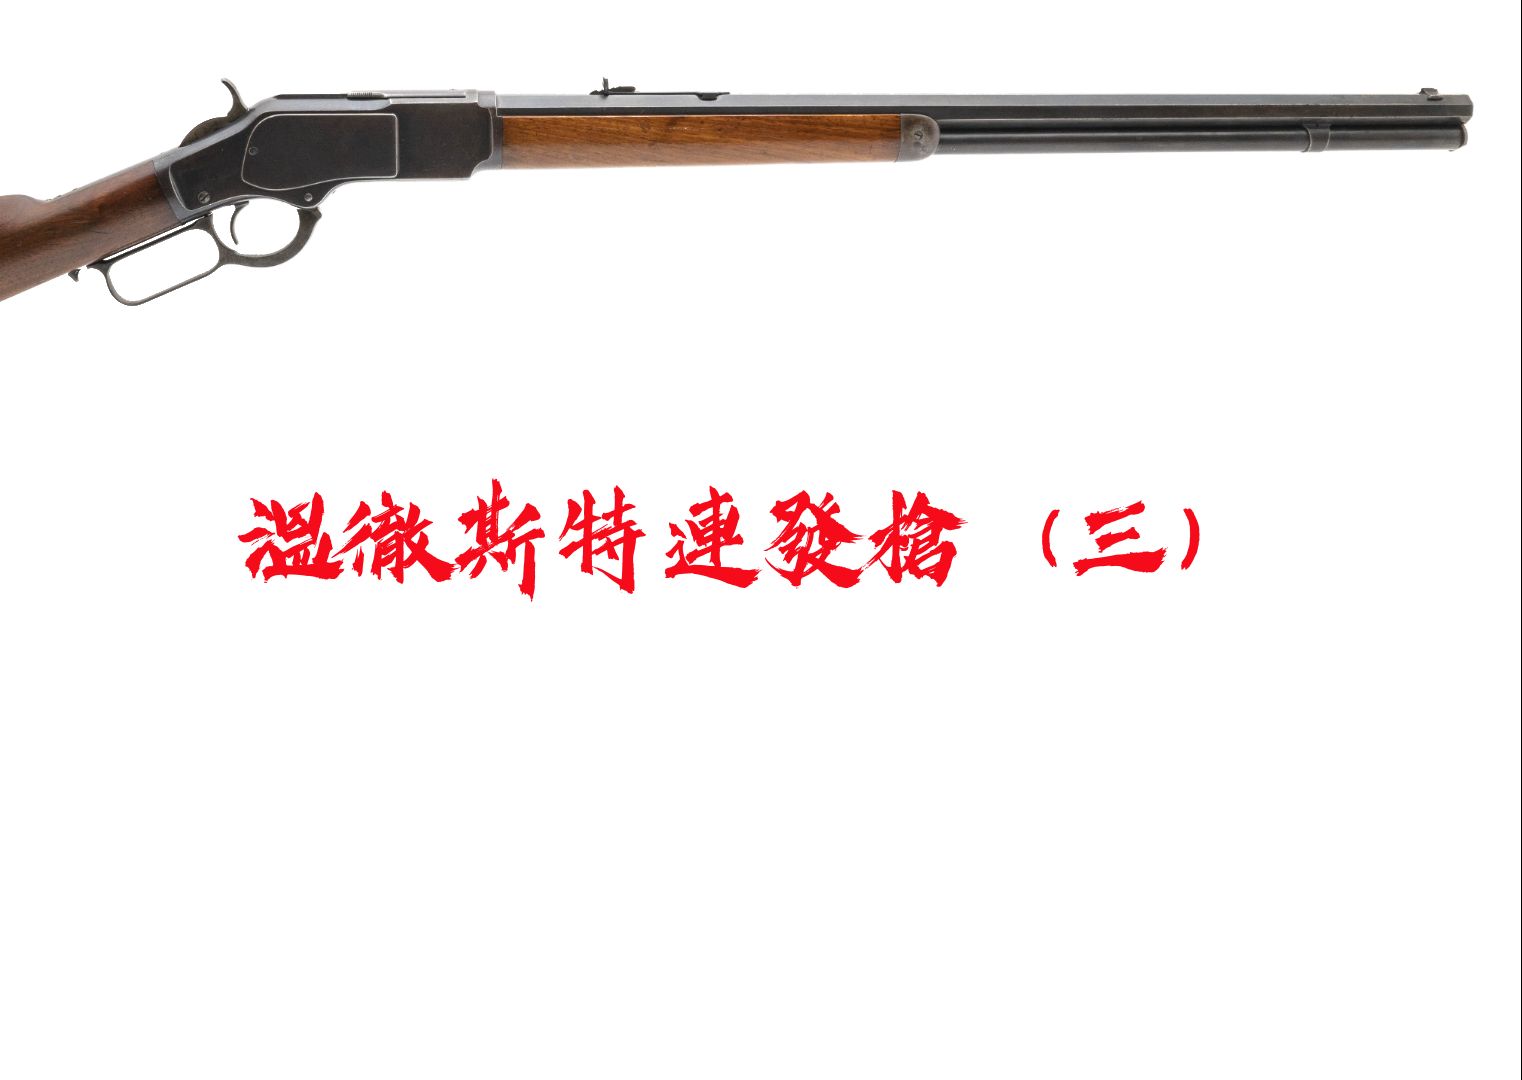 【绝地求生WIN94】温彻斯特 M1894杠杆步枪